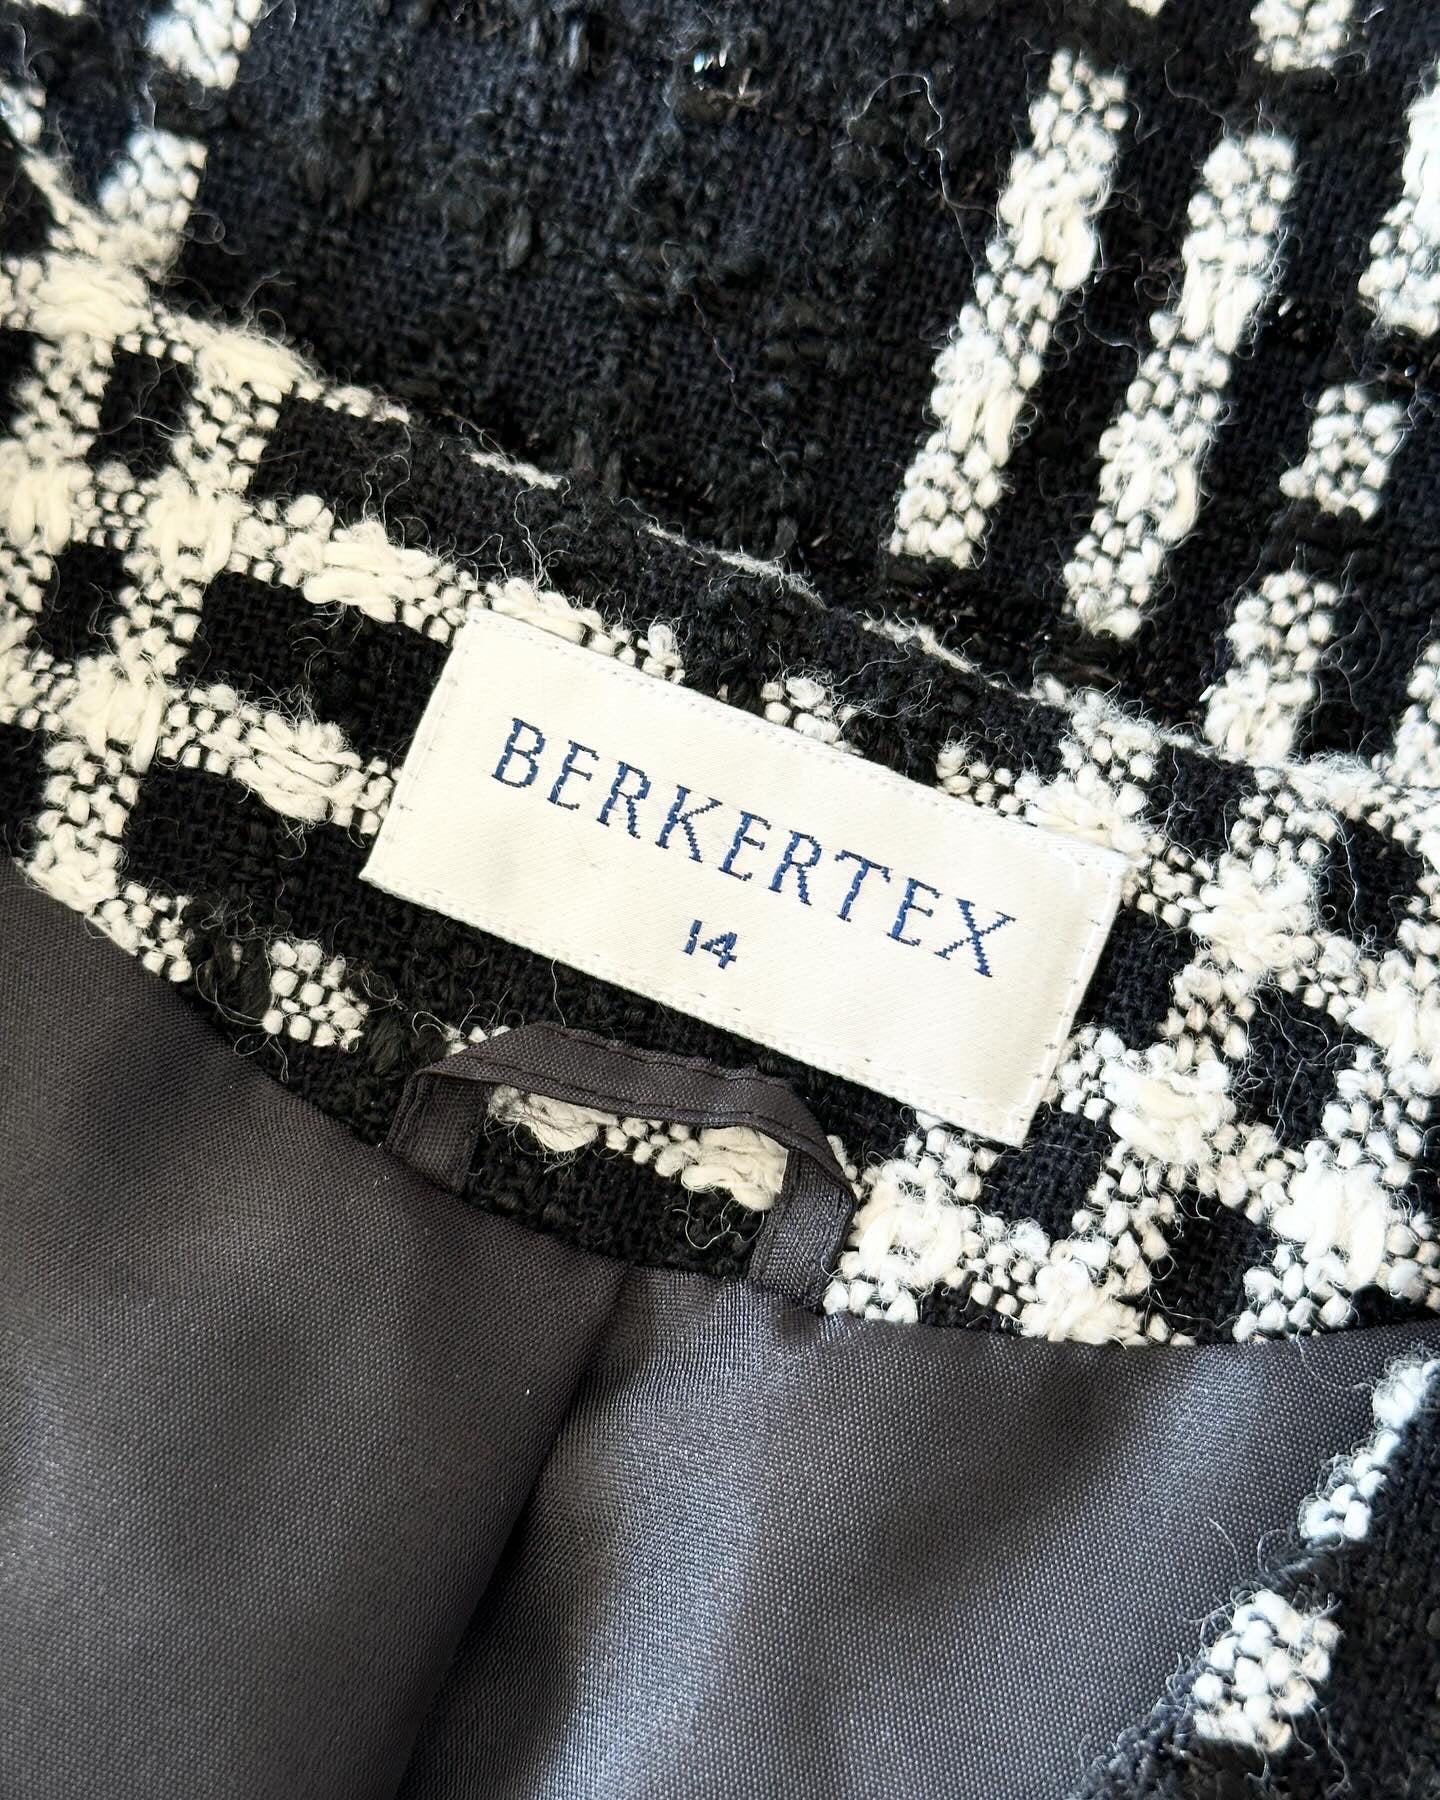 Beautiful vintage tweed blazer 💔